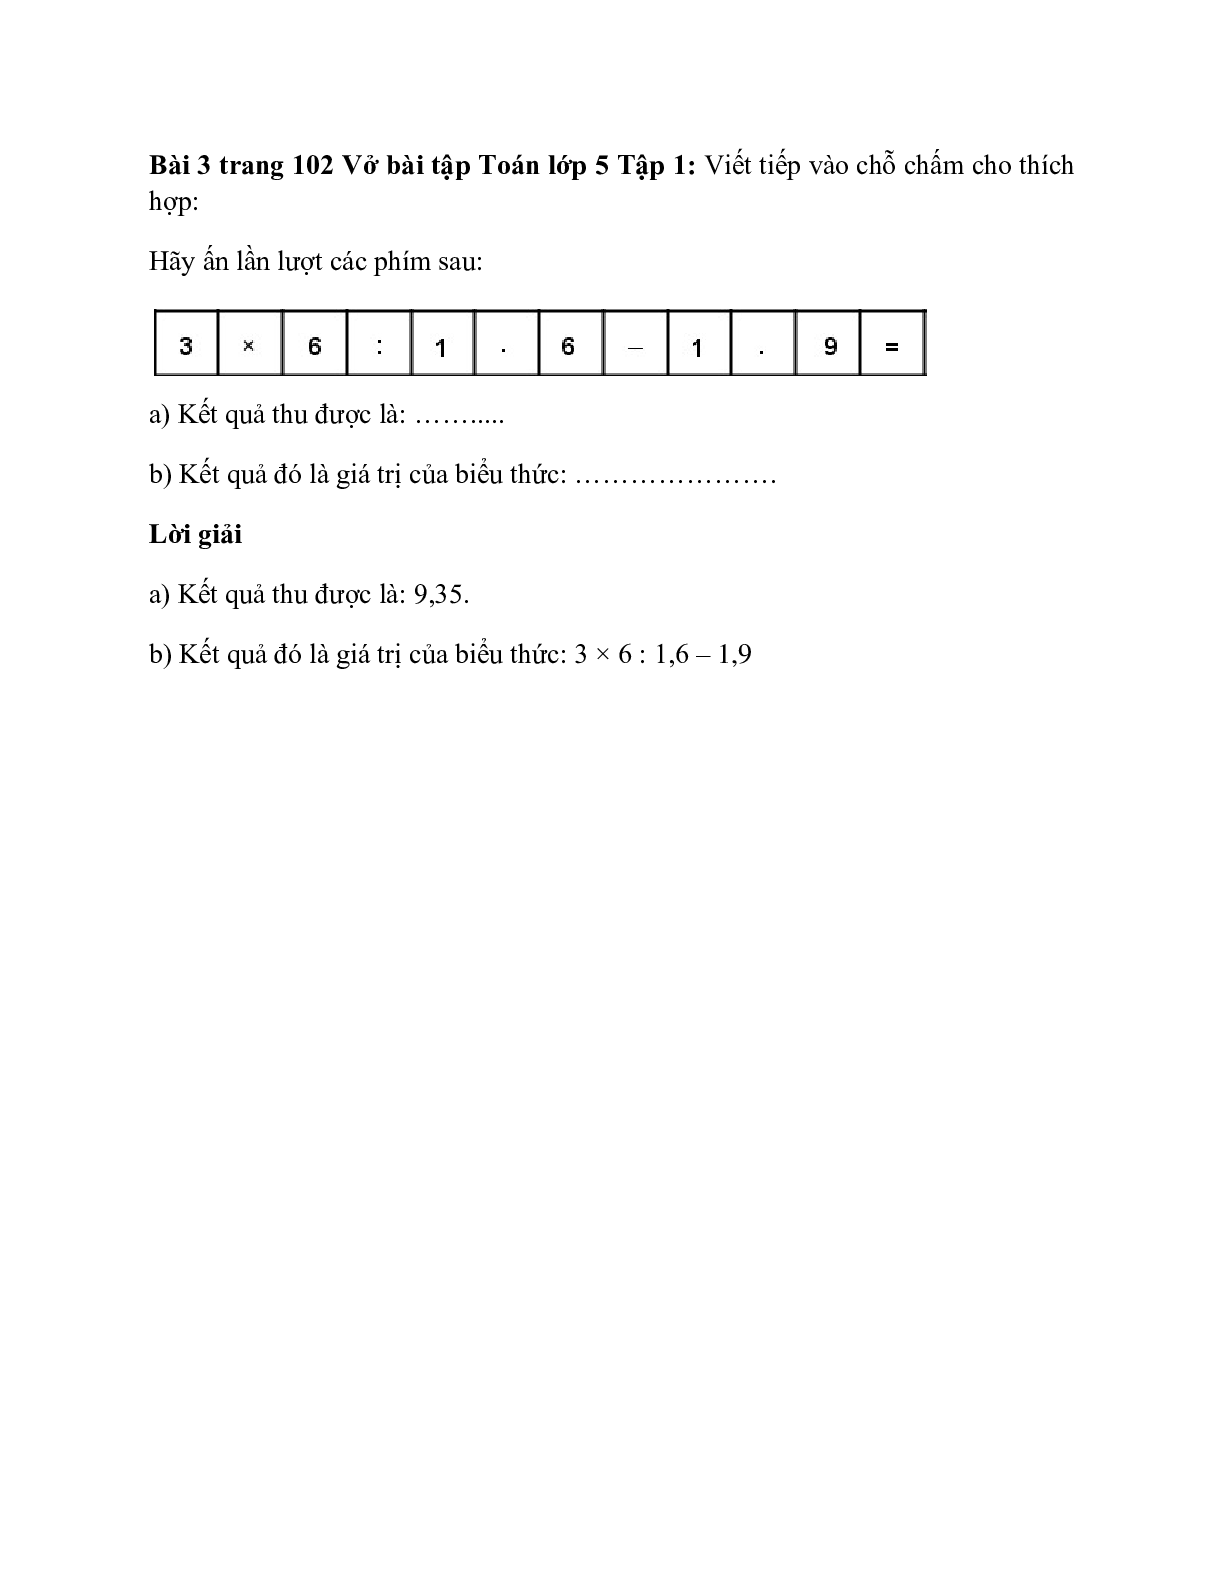 Vở bài tập Toán lớp 5 Tập 1 trang 102 Bài 83: Giới thiệu máy tính bỏ túi (trang 2)